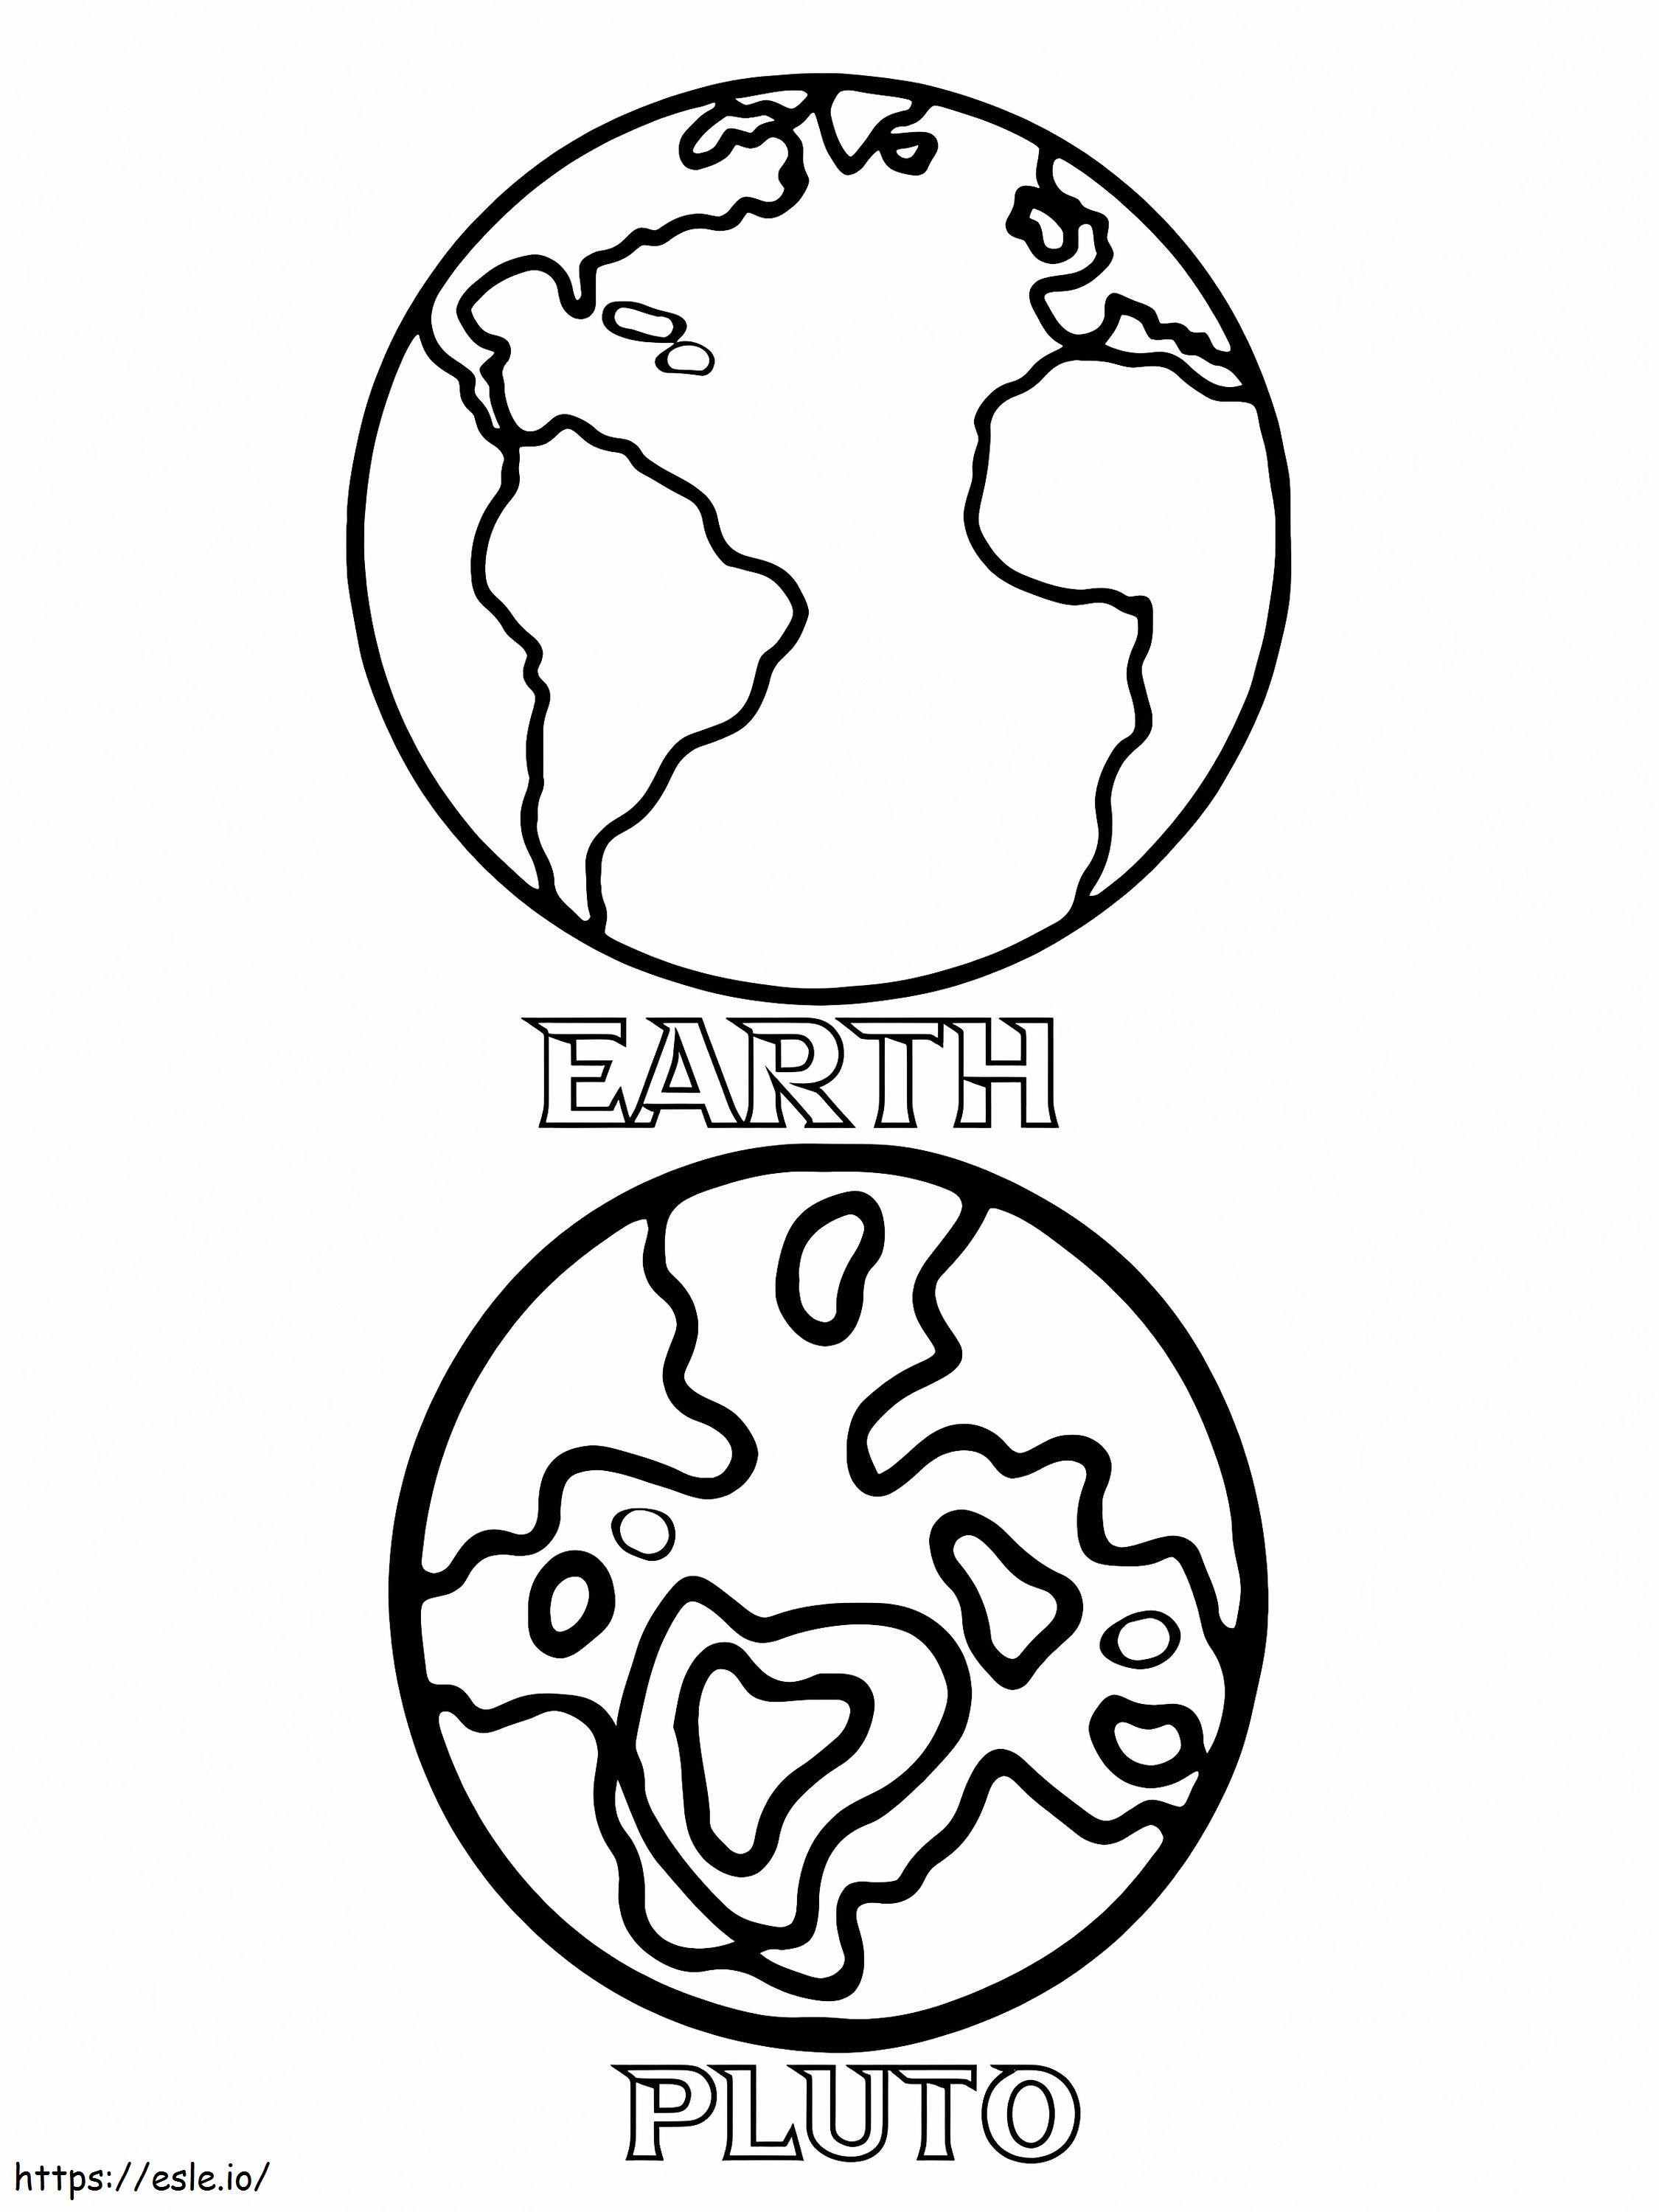 Tierra y Plutón para colorear